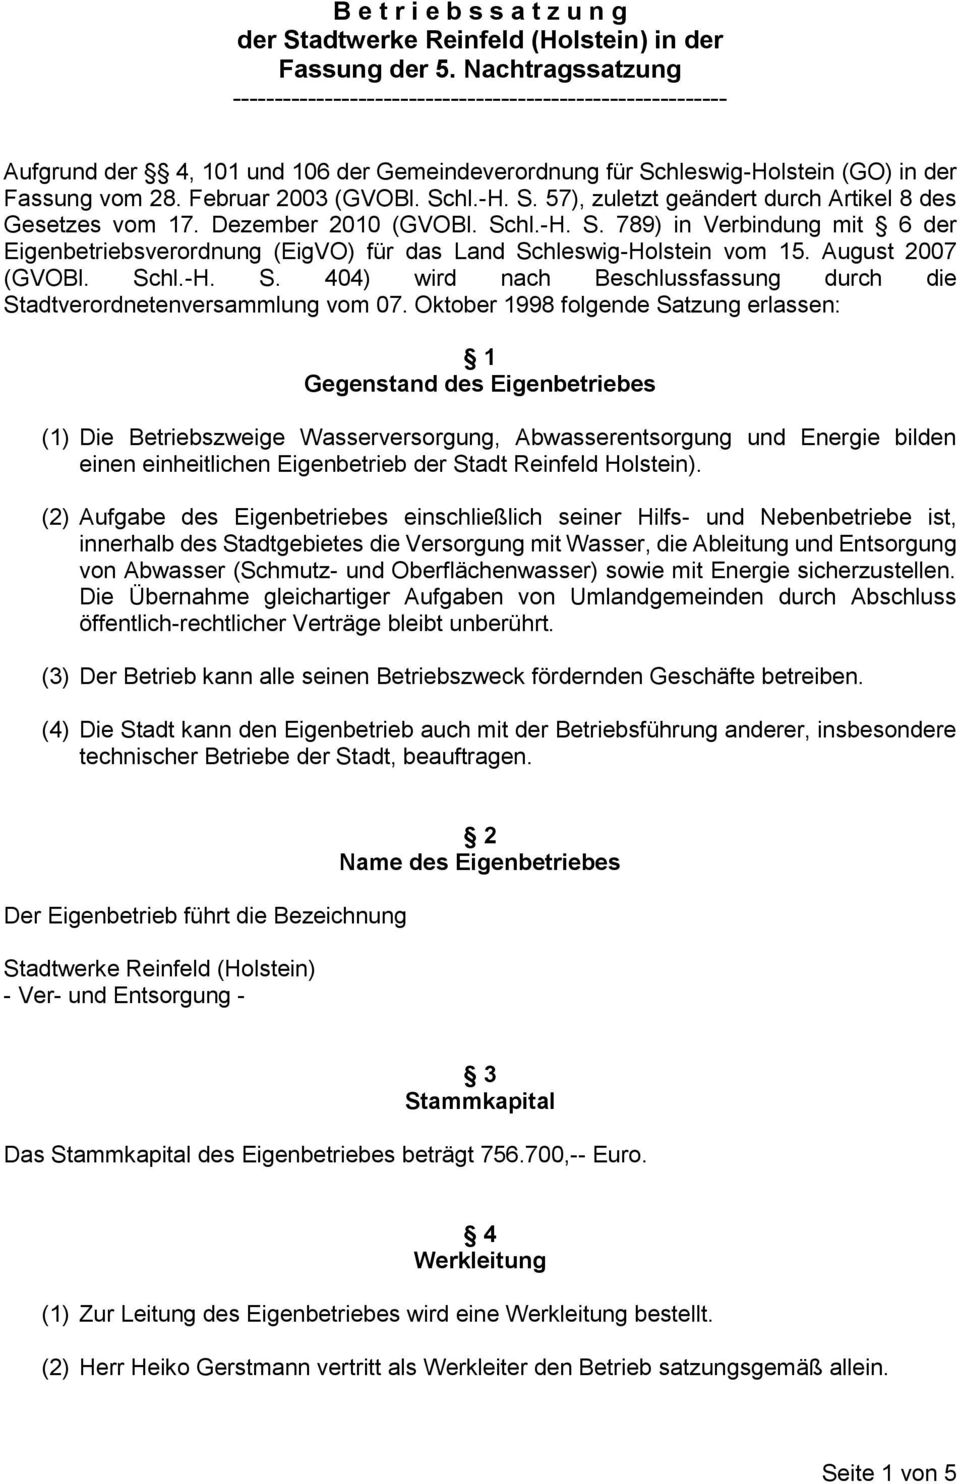 Schl.-H. S. 57), zuletzt geändert durch Artikel 8 des Gesetzes vom 17. Dezember 2010 (GVOBl. Schl.-H. S. 789) in Verbindung mit 6 der Eigenbetriebsverordnung (EigVO) für das Land Schleswig-Holstein vom 15.